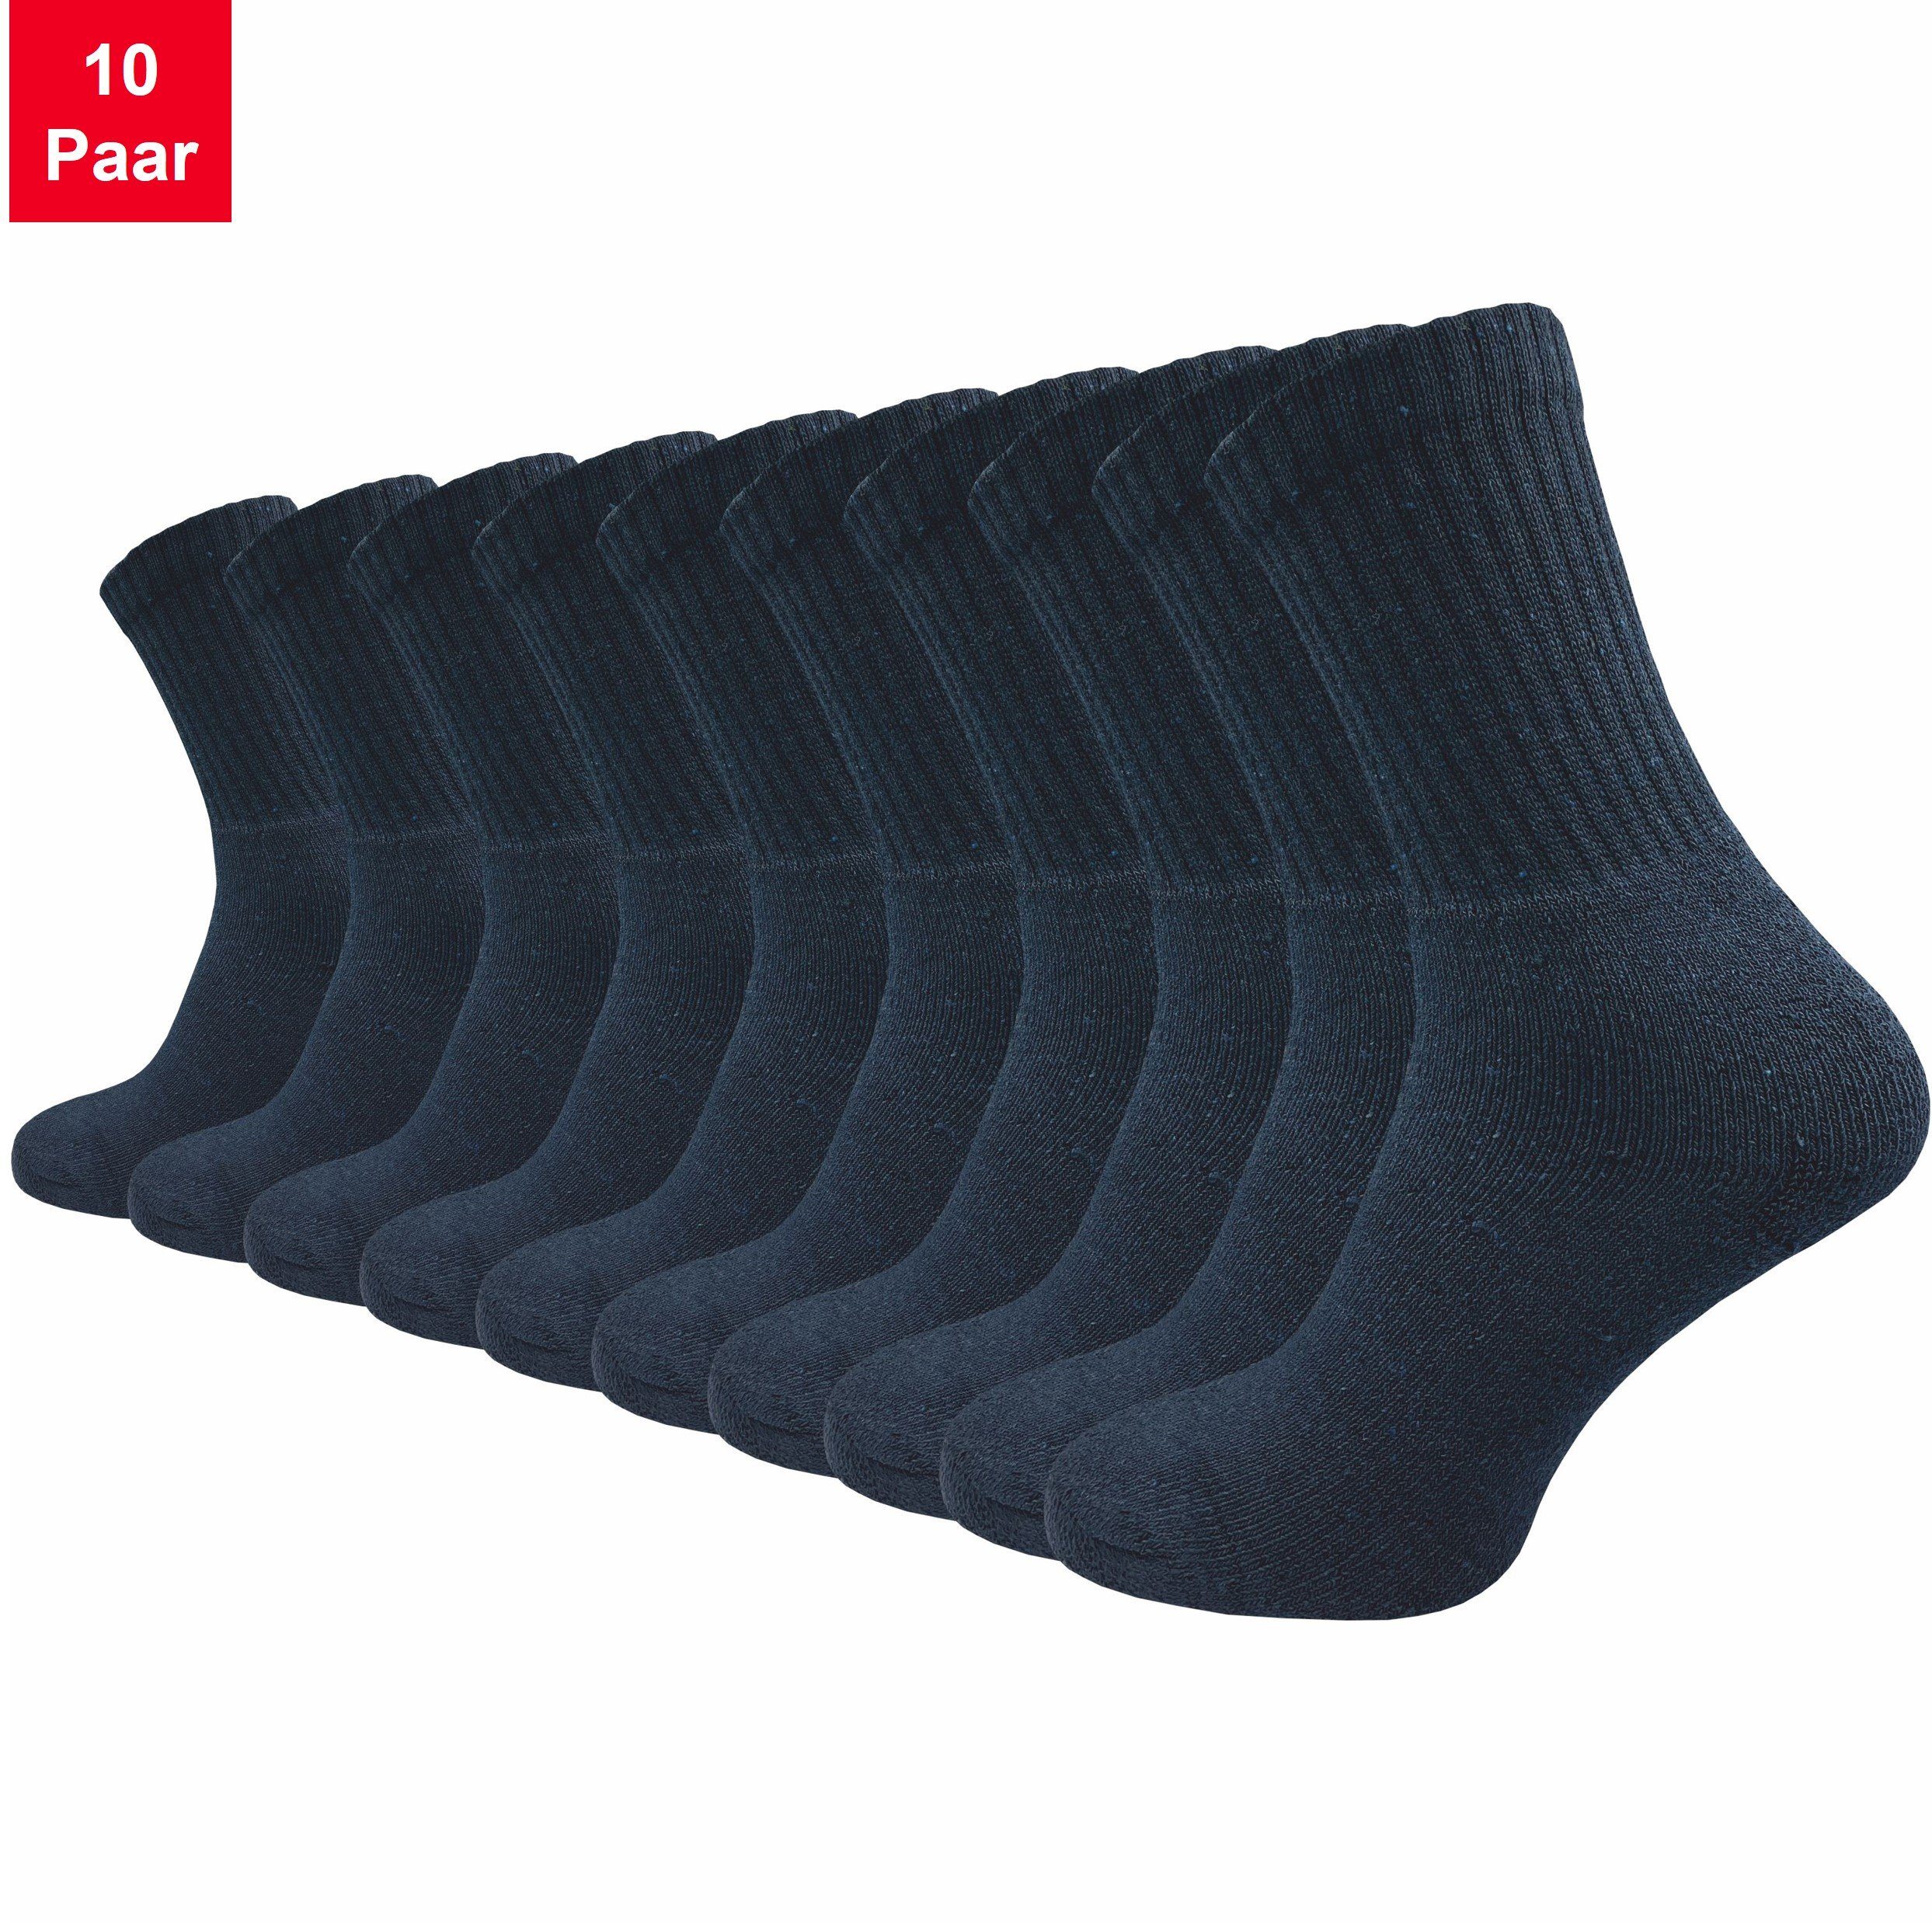 GAWILO Tennissocken für Damen & Herren in schwarz, weiß & grau - Sportsocken aus Baumwolle (10 Paar) Extra langlebig dank verstärktem Frotteefuß - u.a. in 39-42 und 43-46 blau